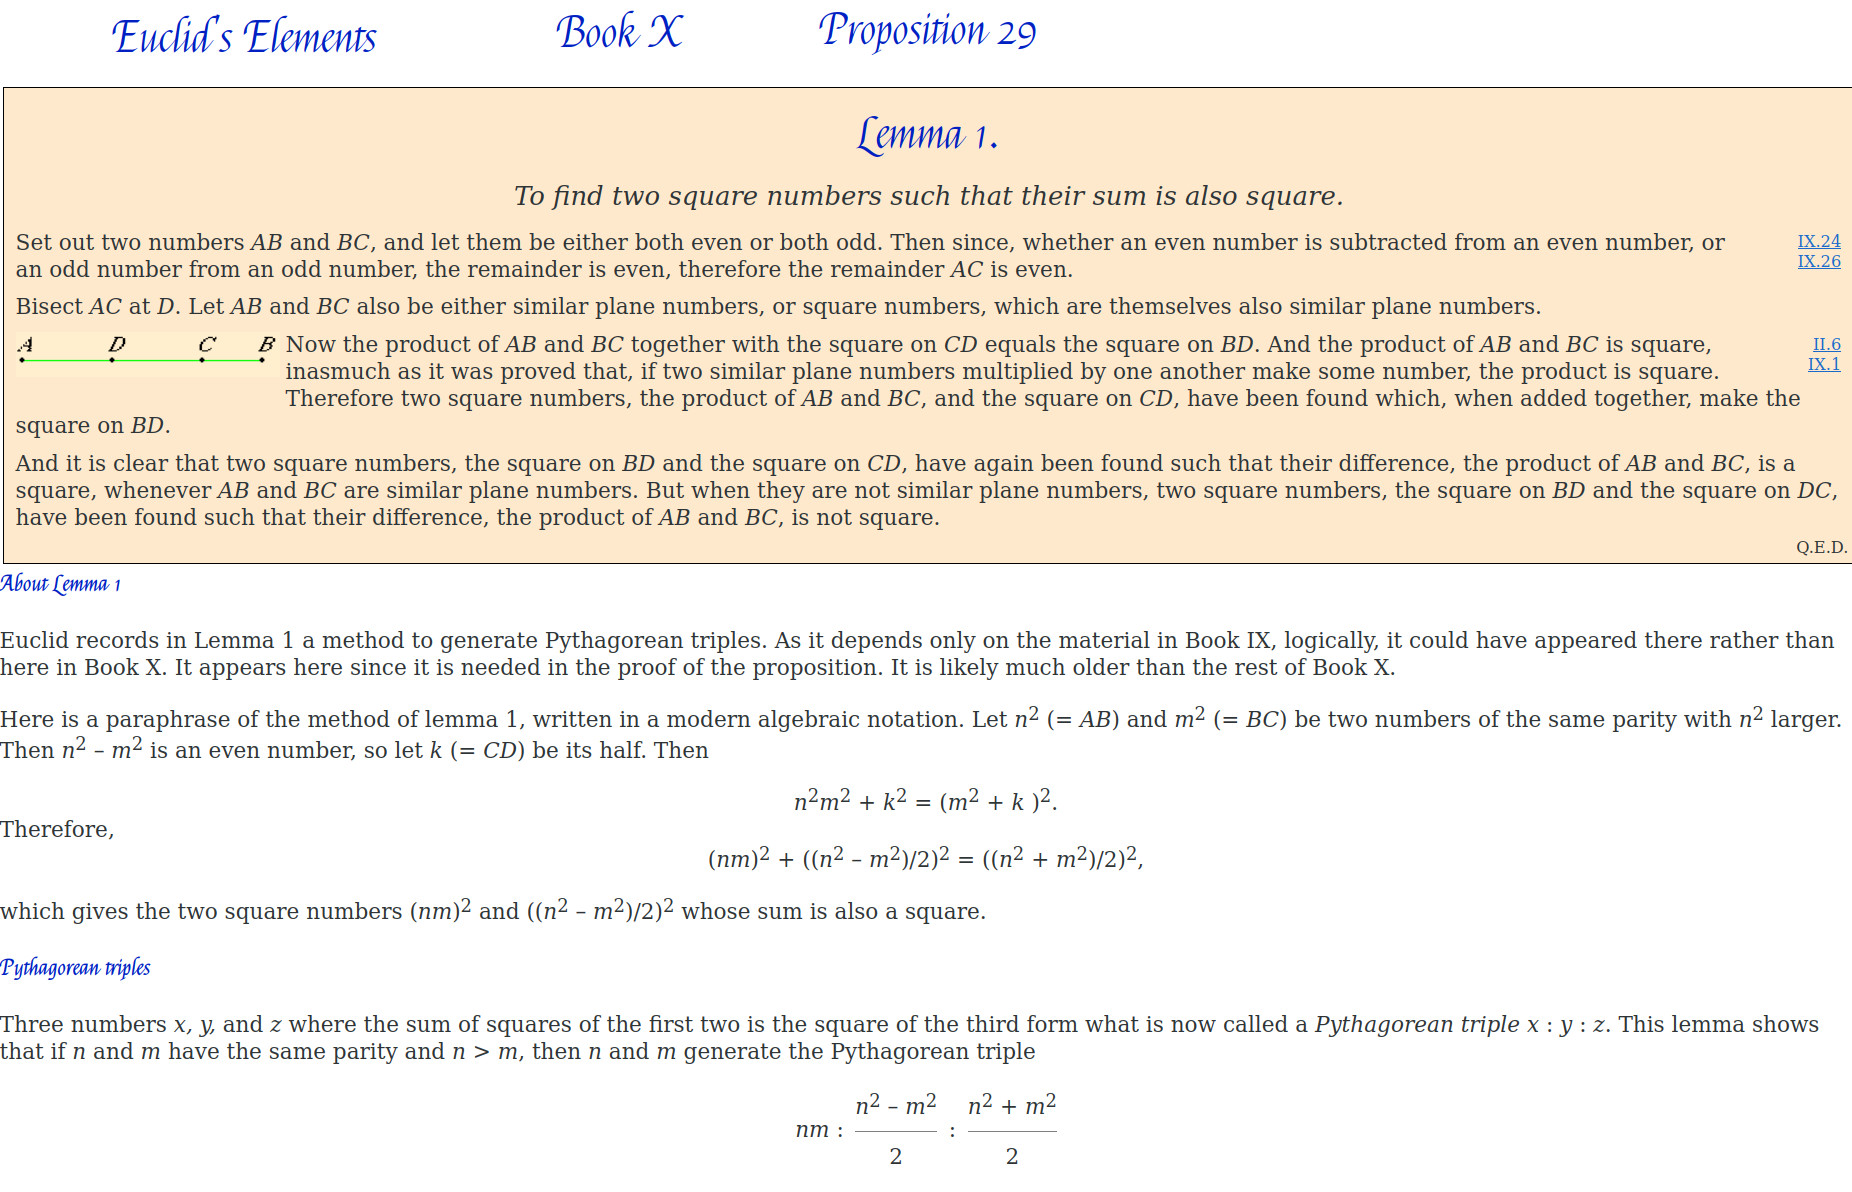 Euclide Livre X lemme 1 de la proposition 29 triangles pythagoriciens.jpg